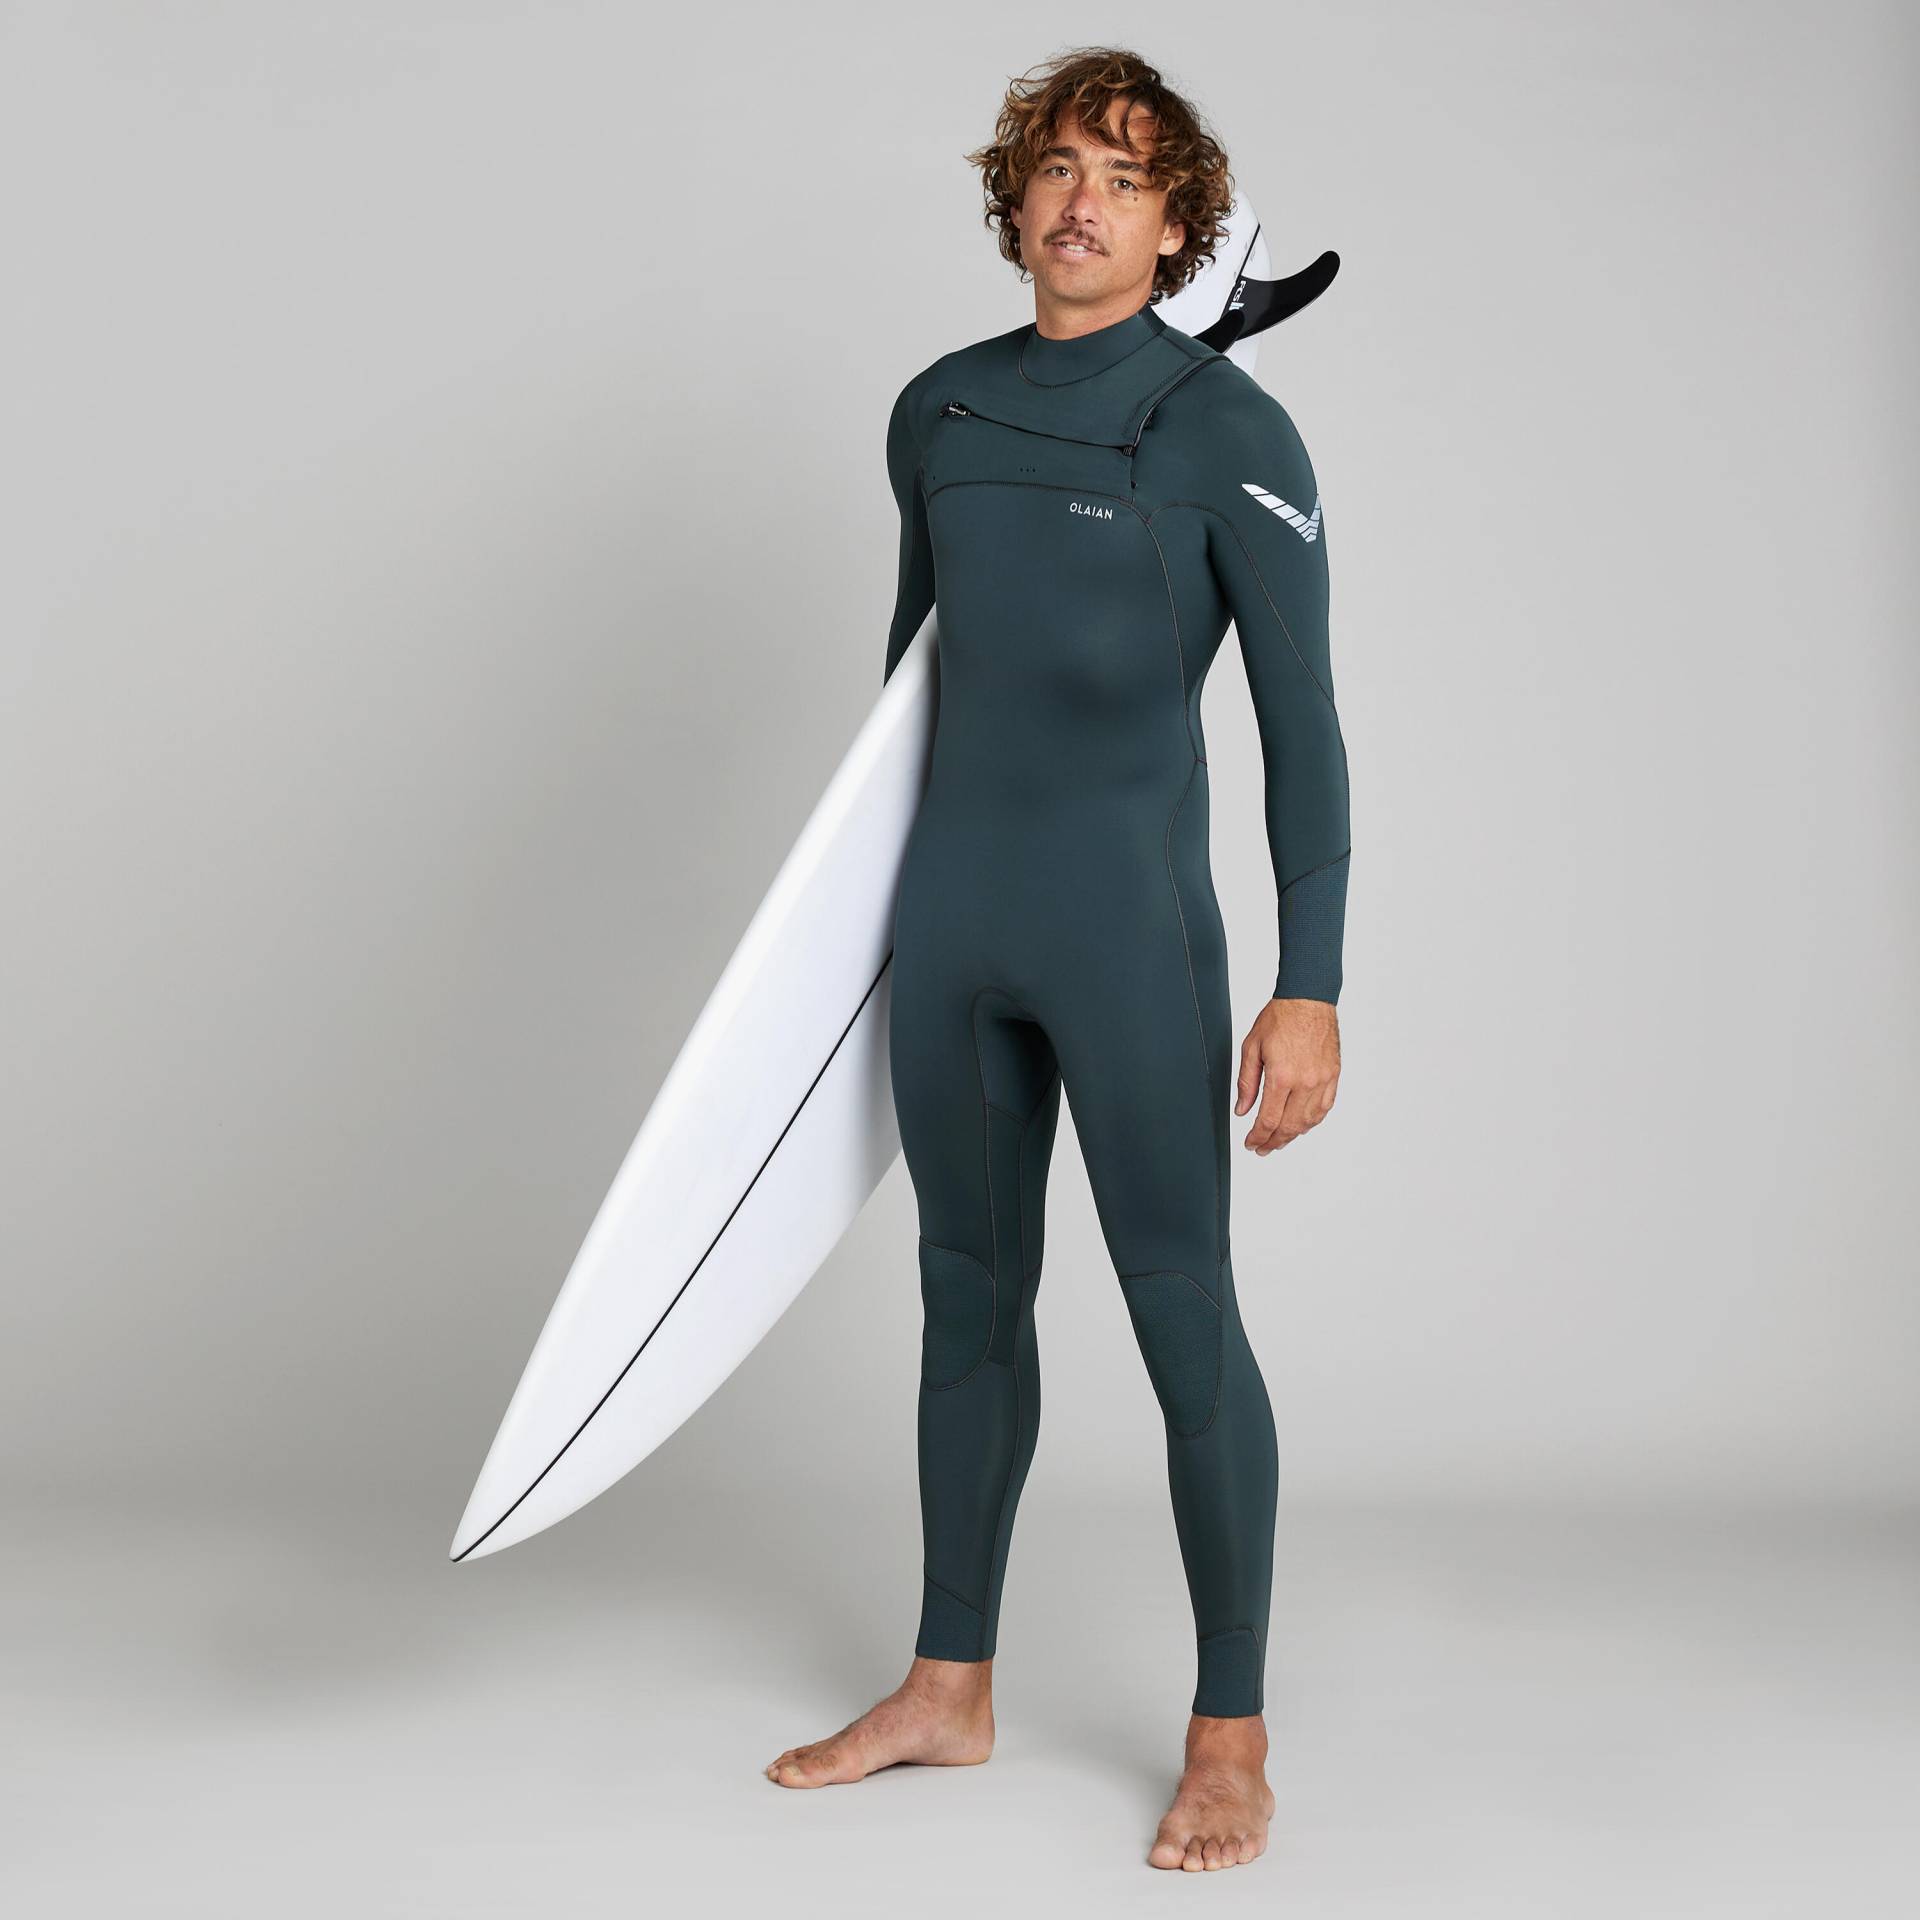 Neoprenanzug Surfen Herren 900 3/2 mm dunkelgrün von OLAIAN